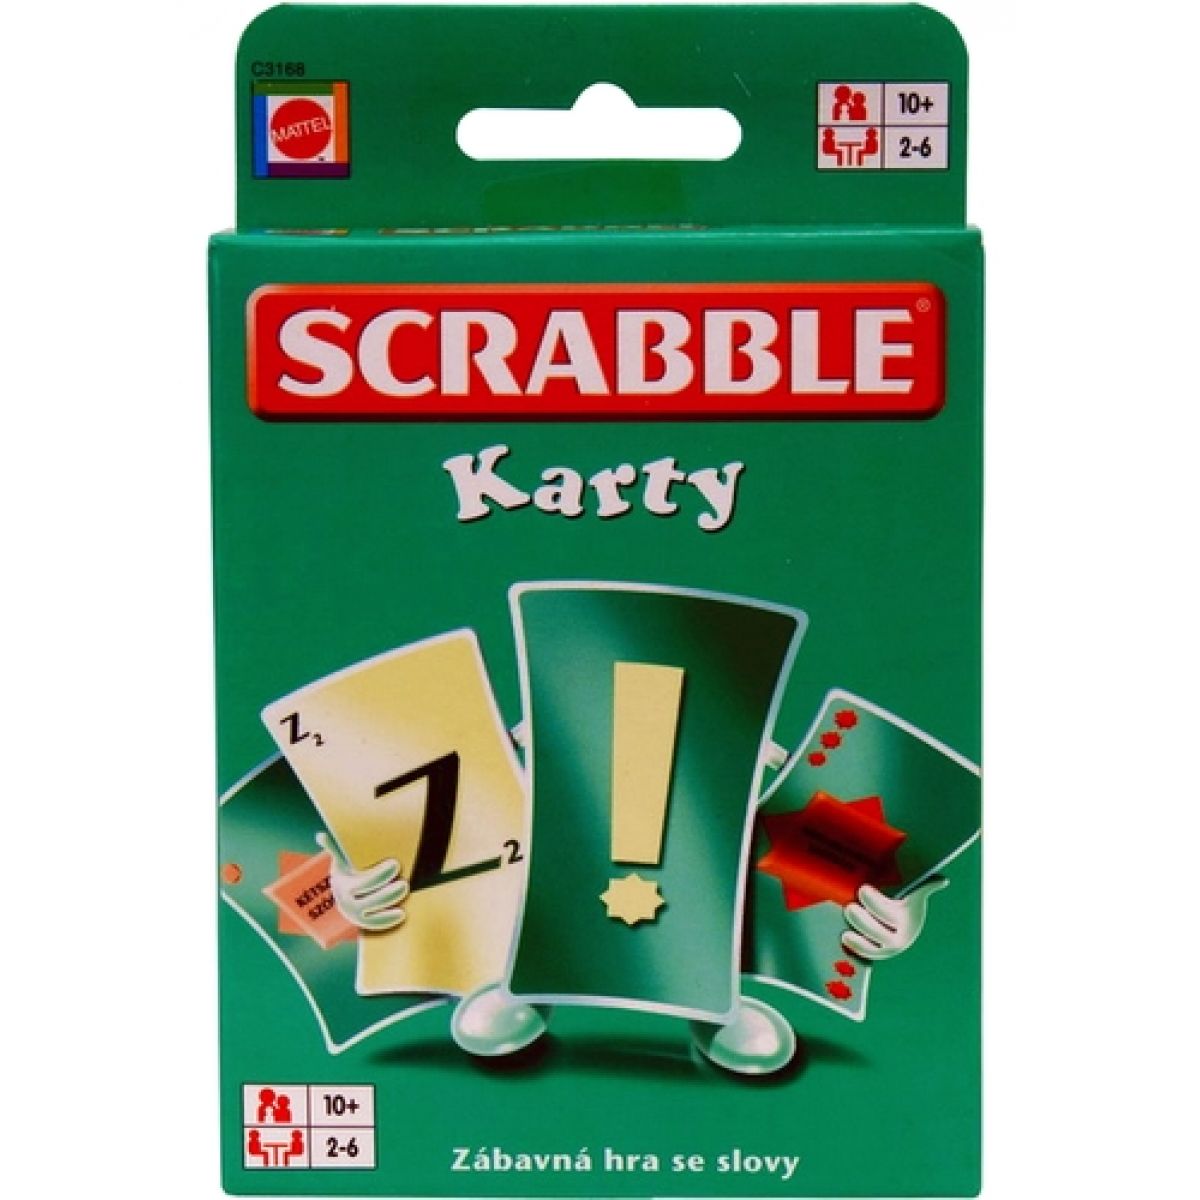 MATTEL C3168 - Scrabble karty - česká verze